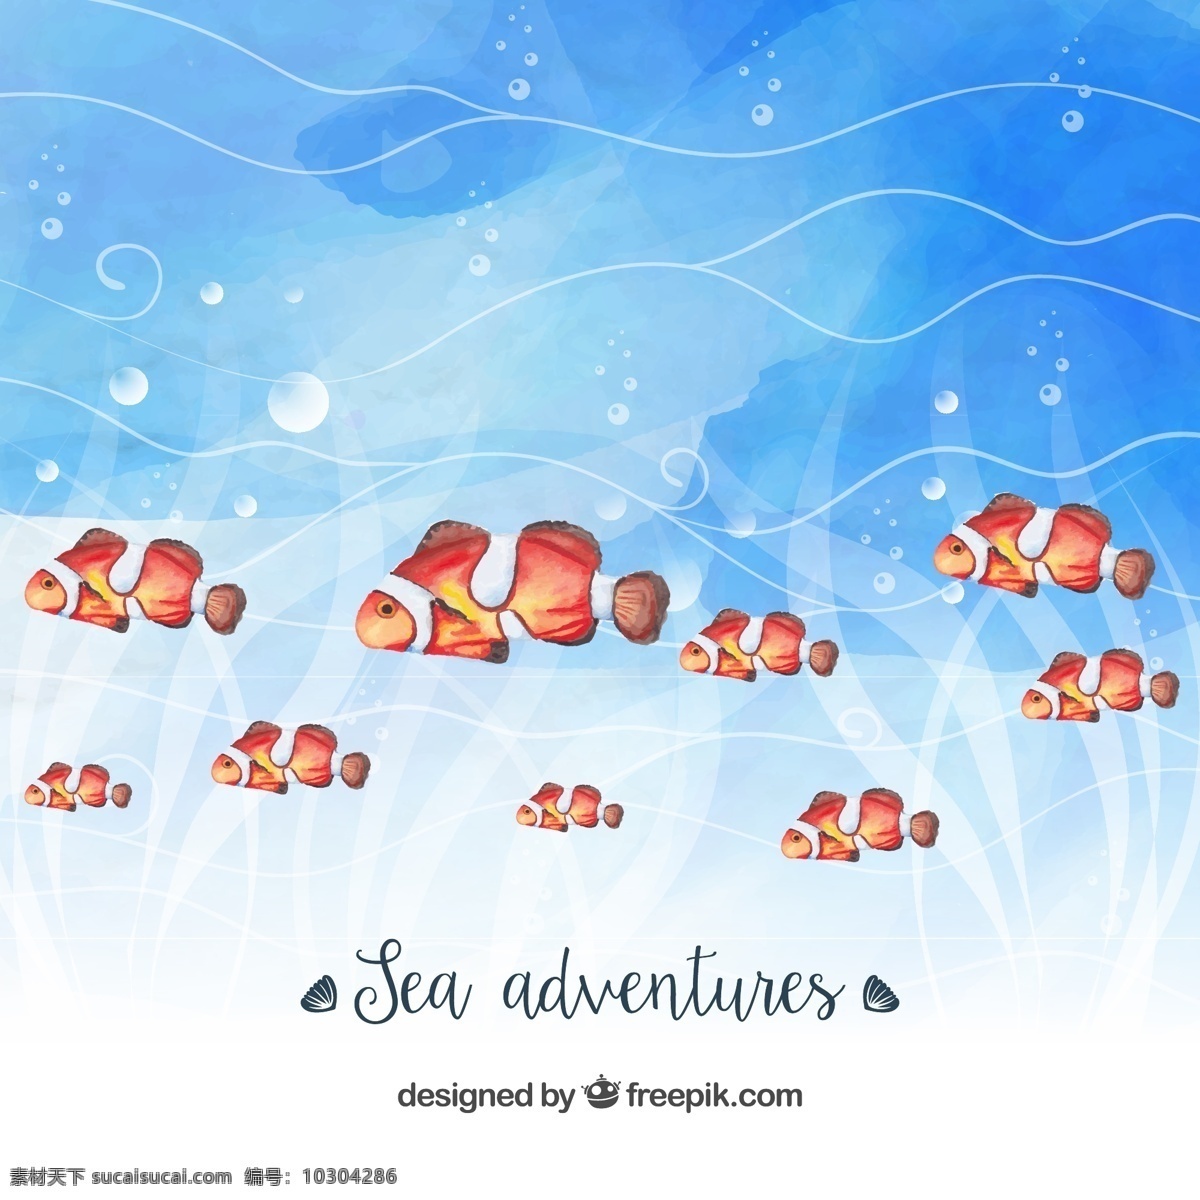 彩绘 海底 小丑 鱼群 矢量 小丑鱼 矢量素材 海水